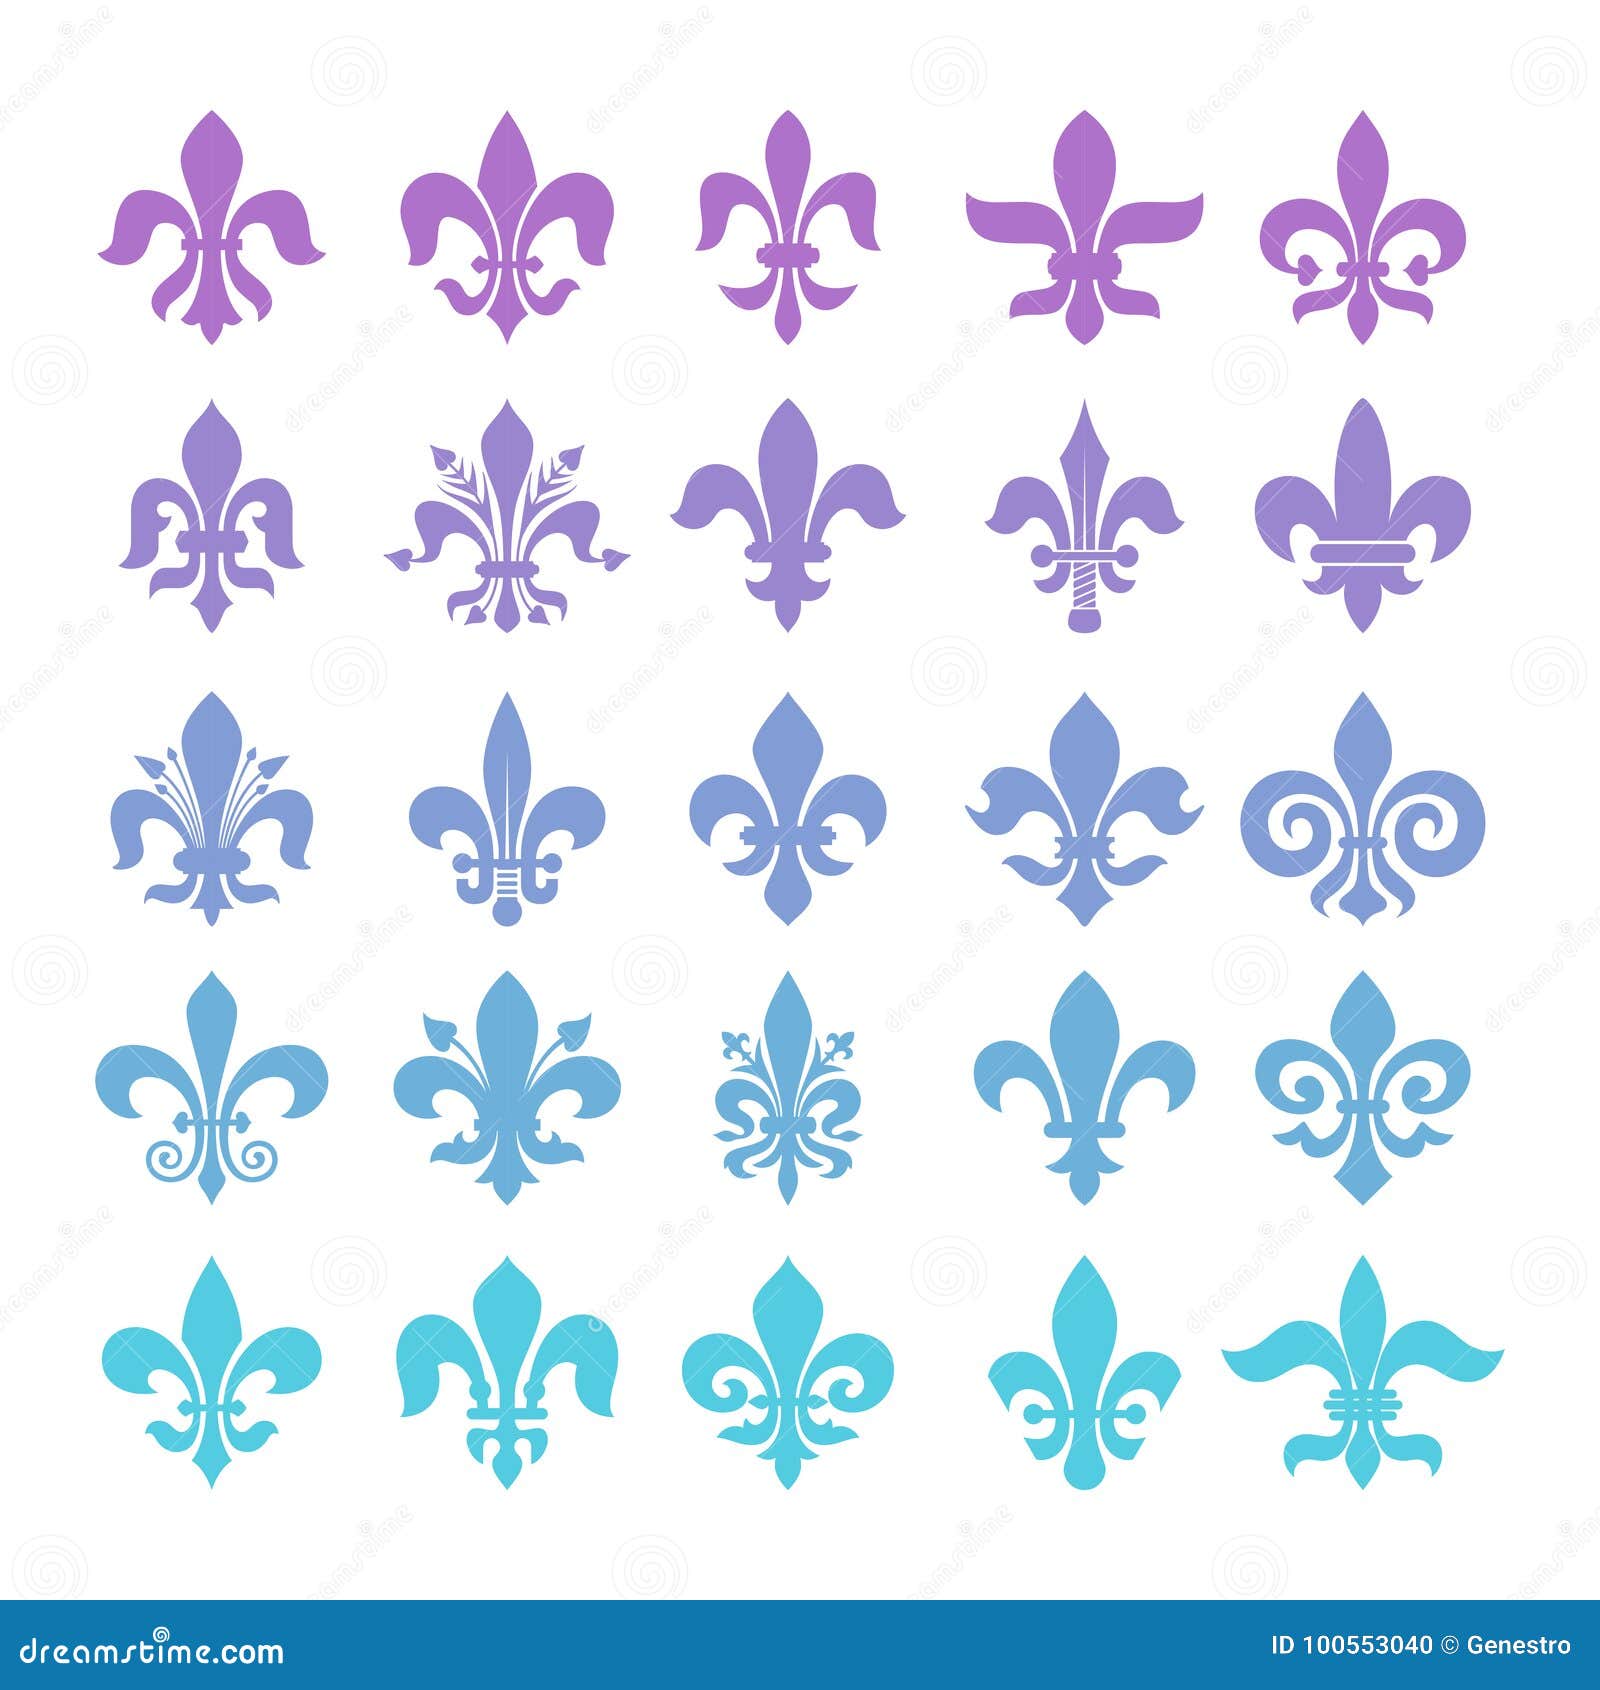 Fleur de lis symbols set. stock vector. Illustration of fleur - 100553040